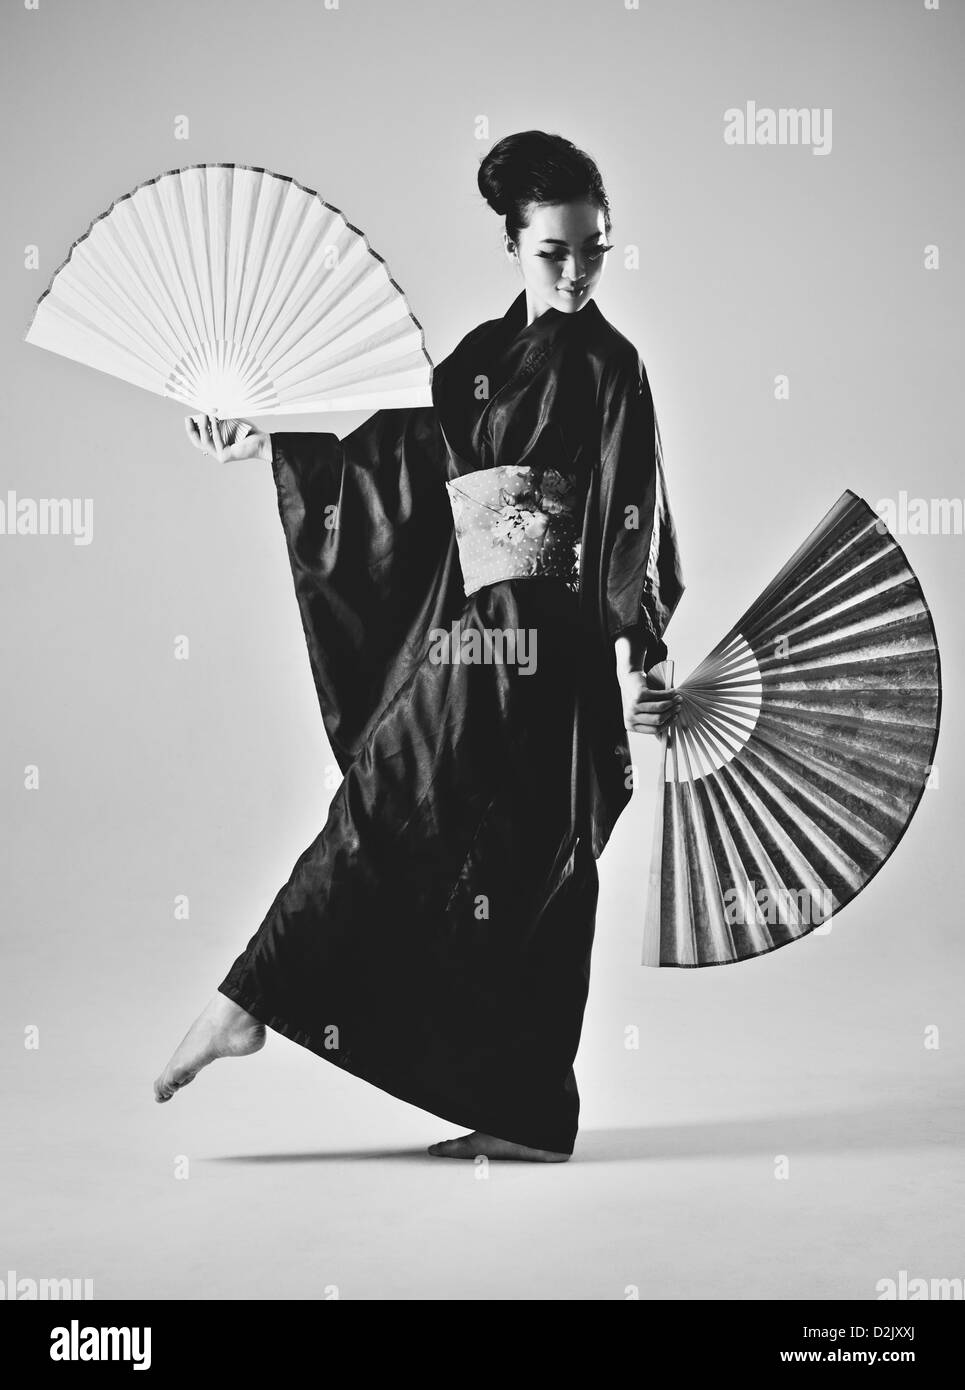 Junge Japanerin mit Fans. Schwarz / weiß-Film-Stil-Farben. Stockfoto